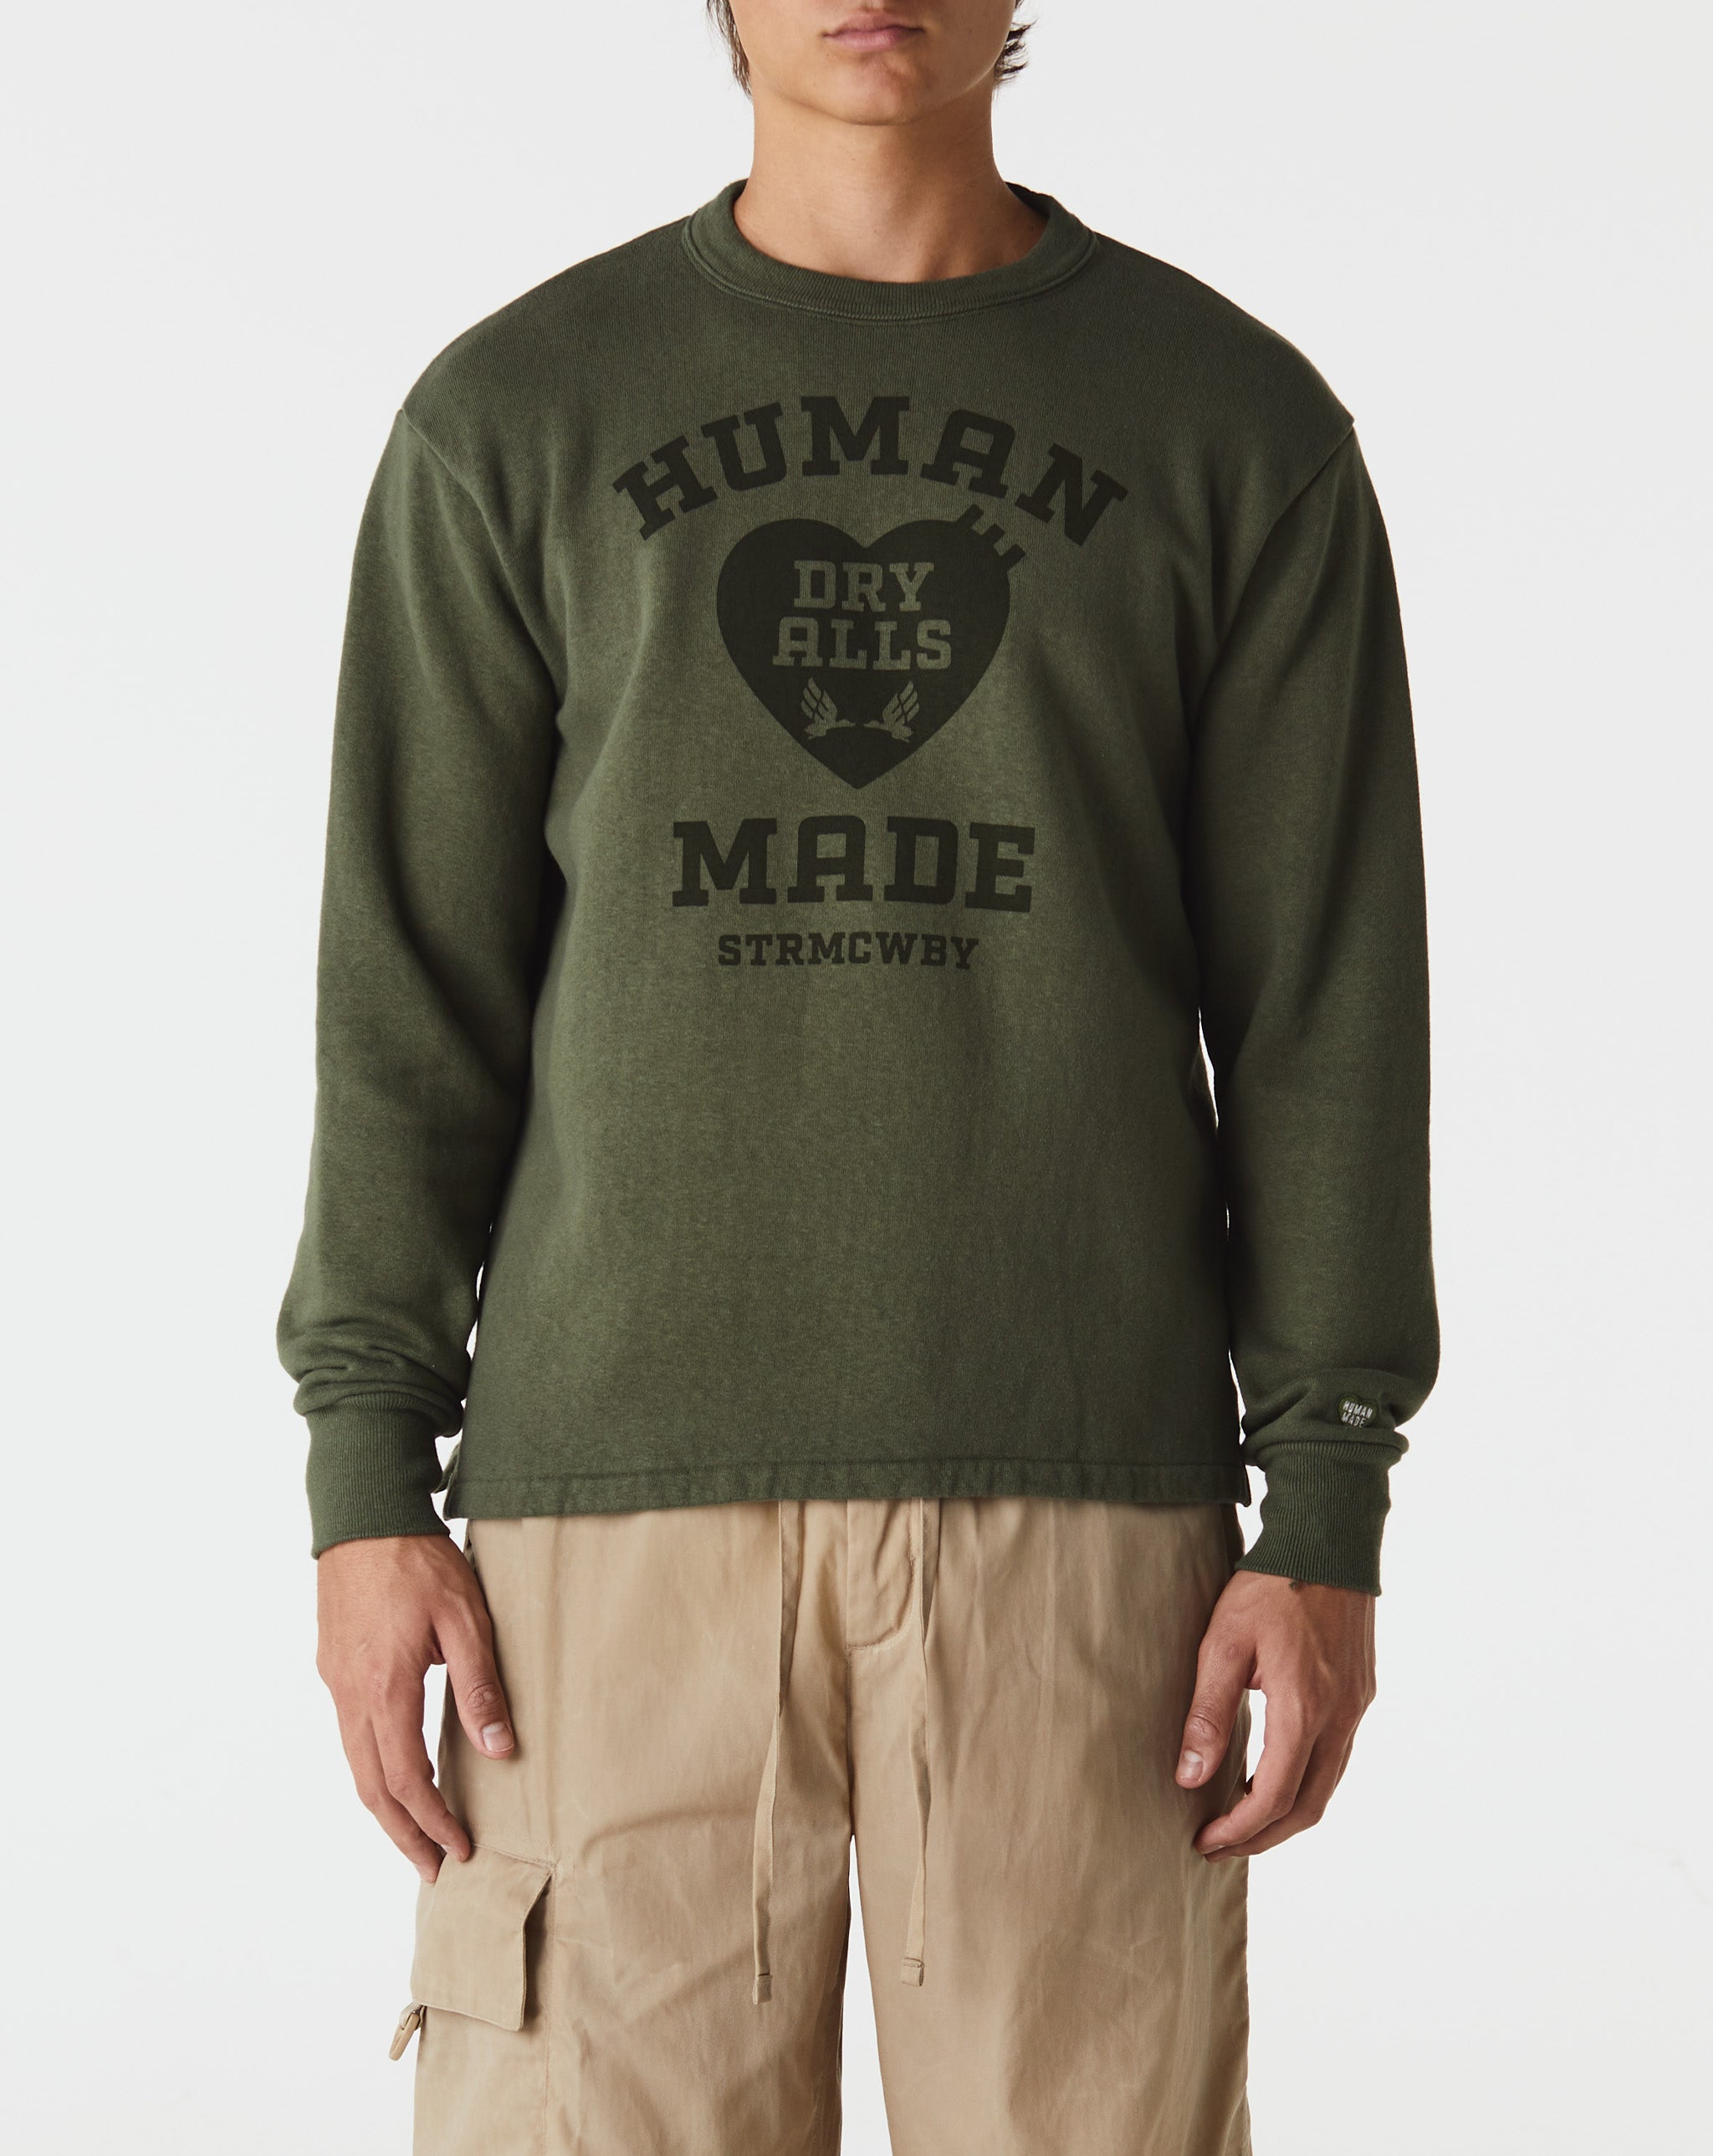 Human Made Military Sweatshirt  - Cheap Urlfreeze Jordan outlet